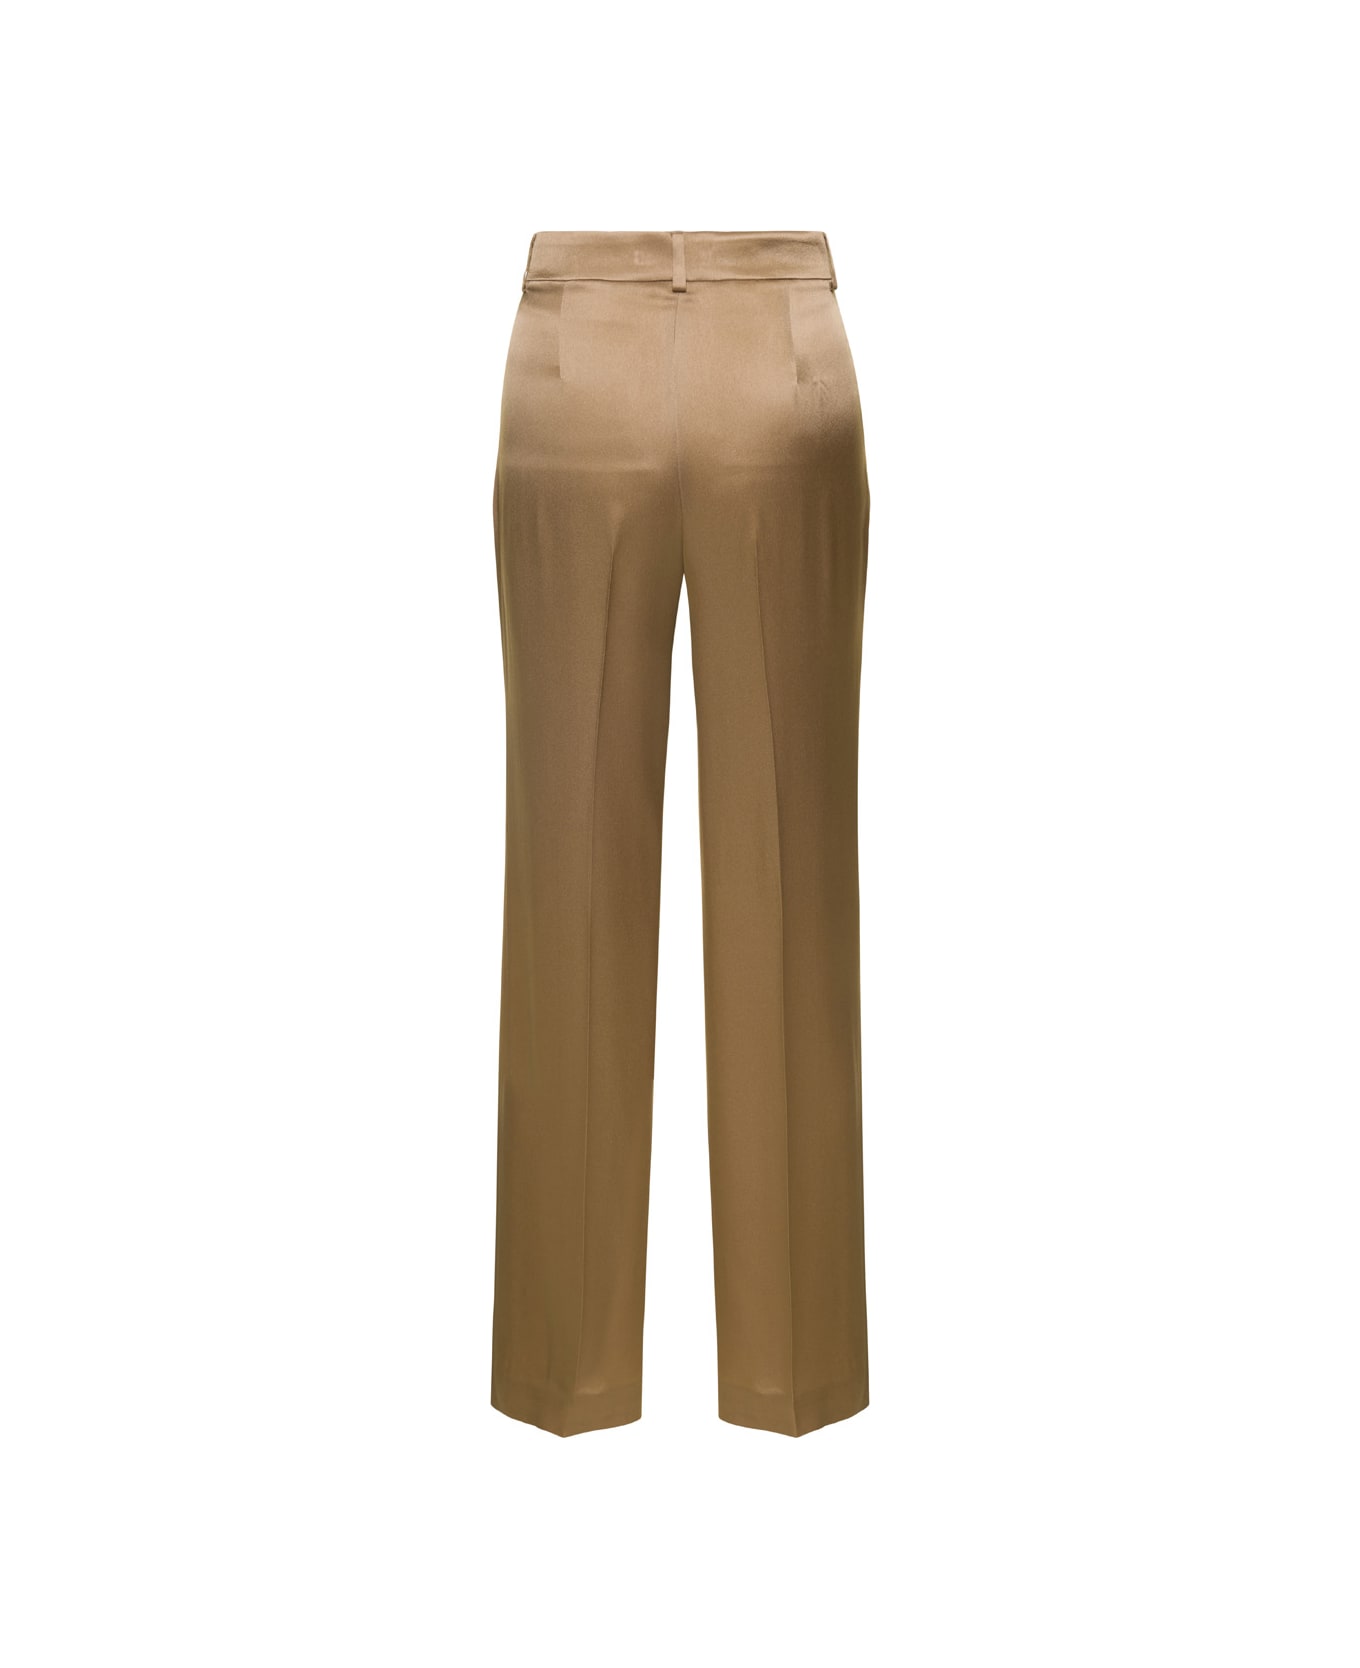 Alberta Ferretti Light Brown Straight Medium Waist Pants In Silk Blend Woman - Beige